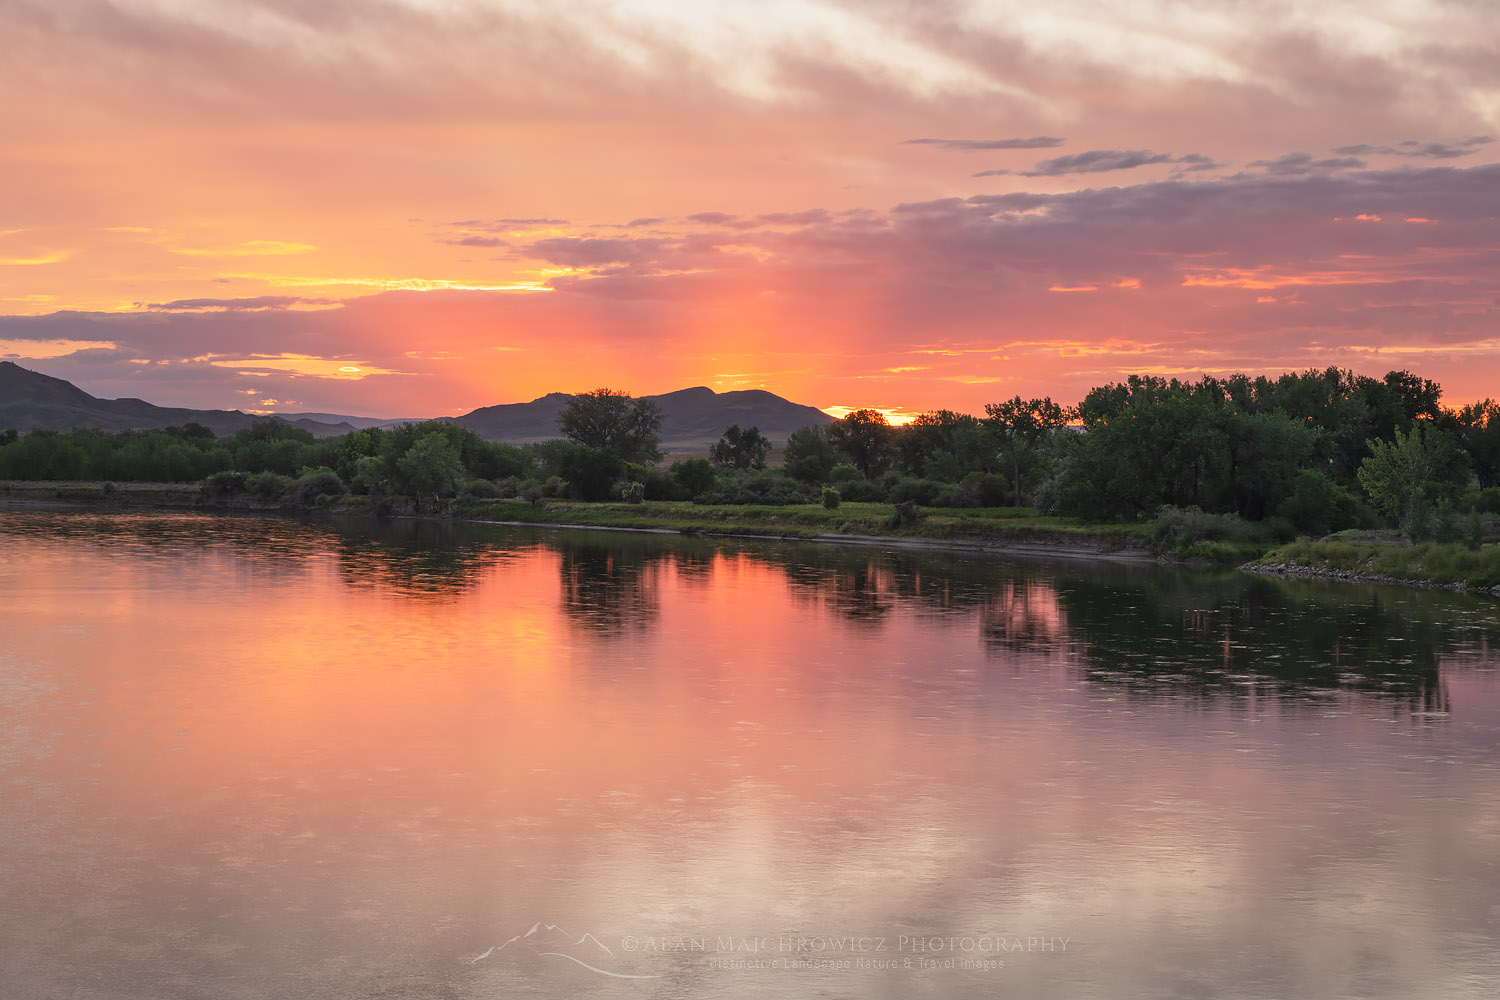 Sunset on the Missouri River nearJudith Landing, Upper Missouri Breaks National Monument Montana